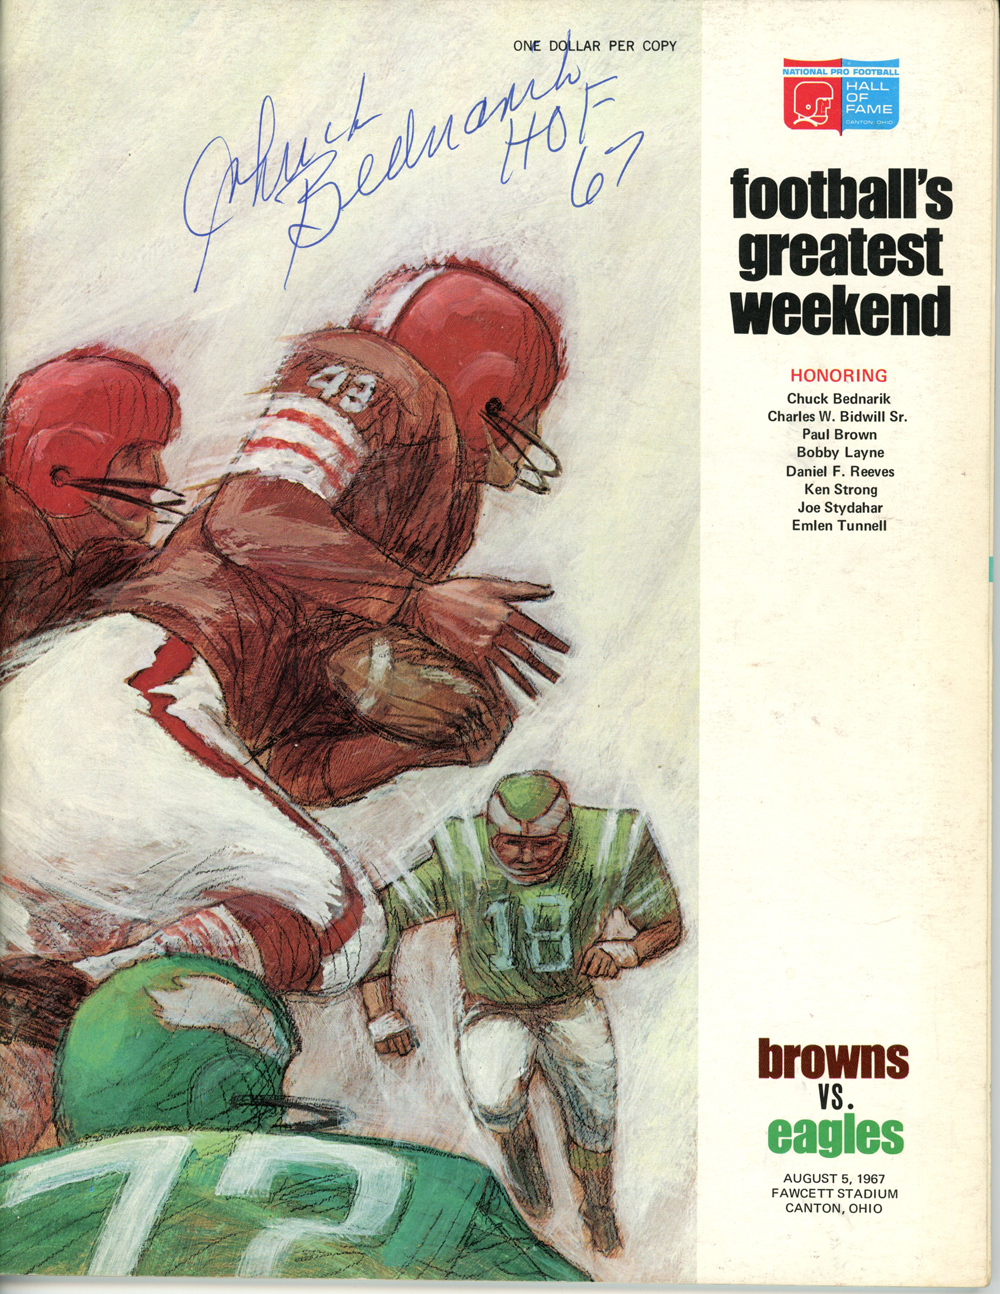 Chuck Bednarik Signed 1967 Football's Greatest Weekend Magazine Beckett